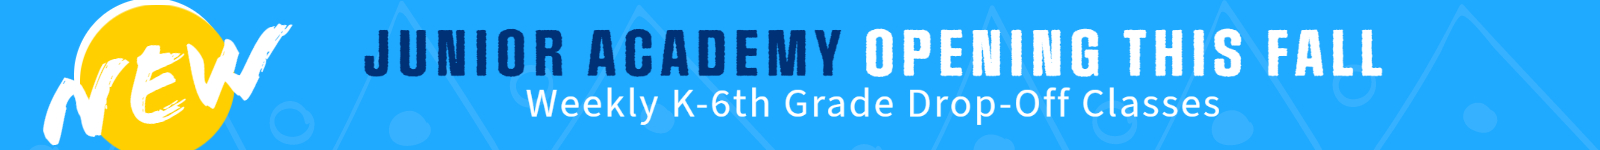 Junior Academy banner